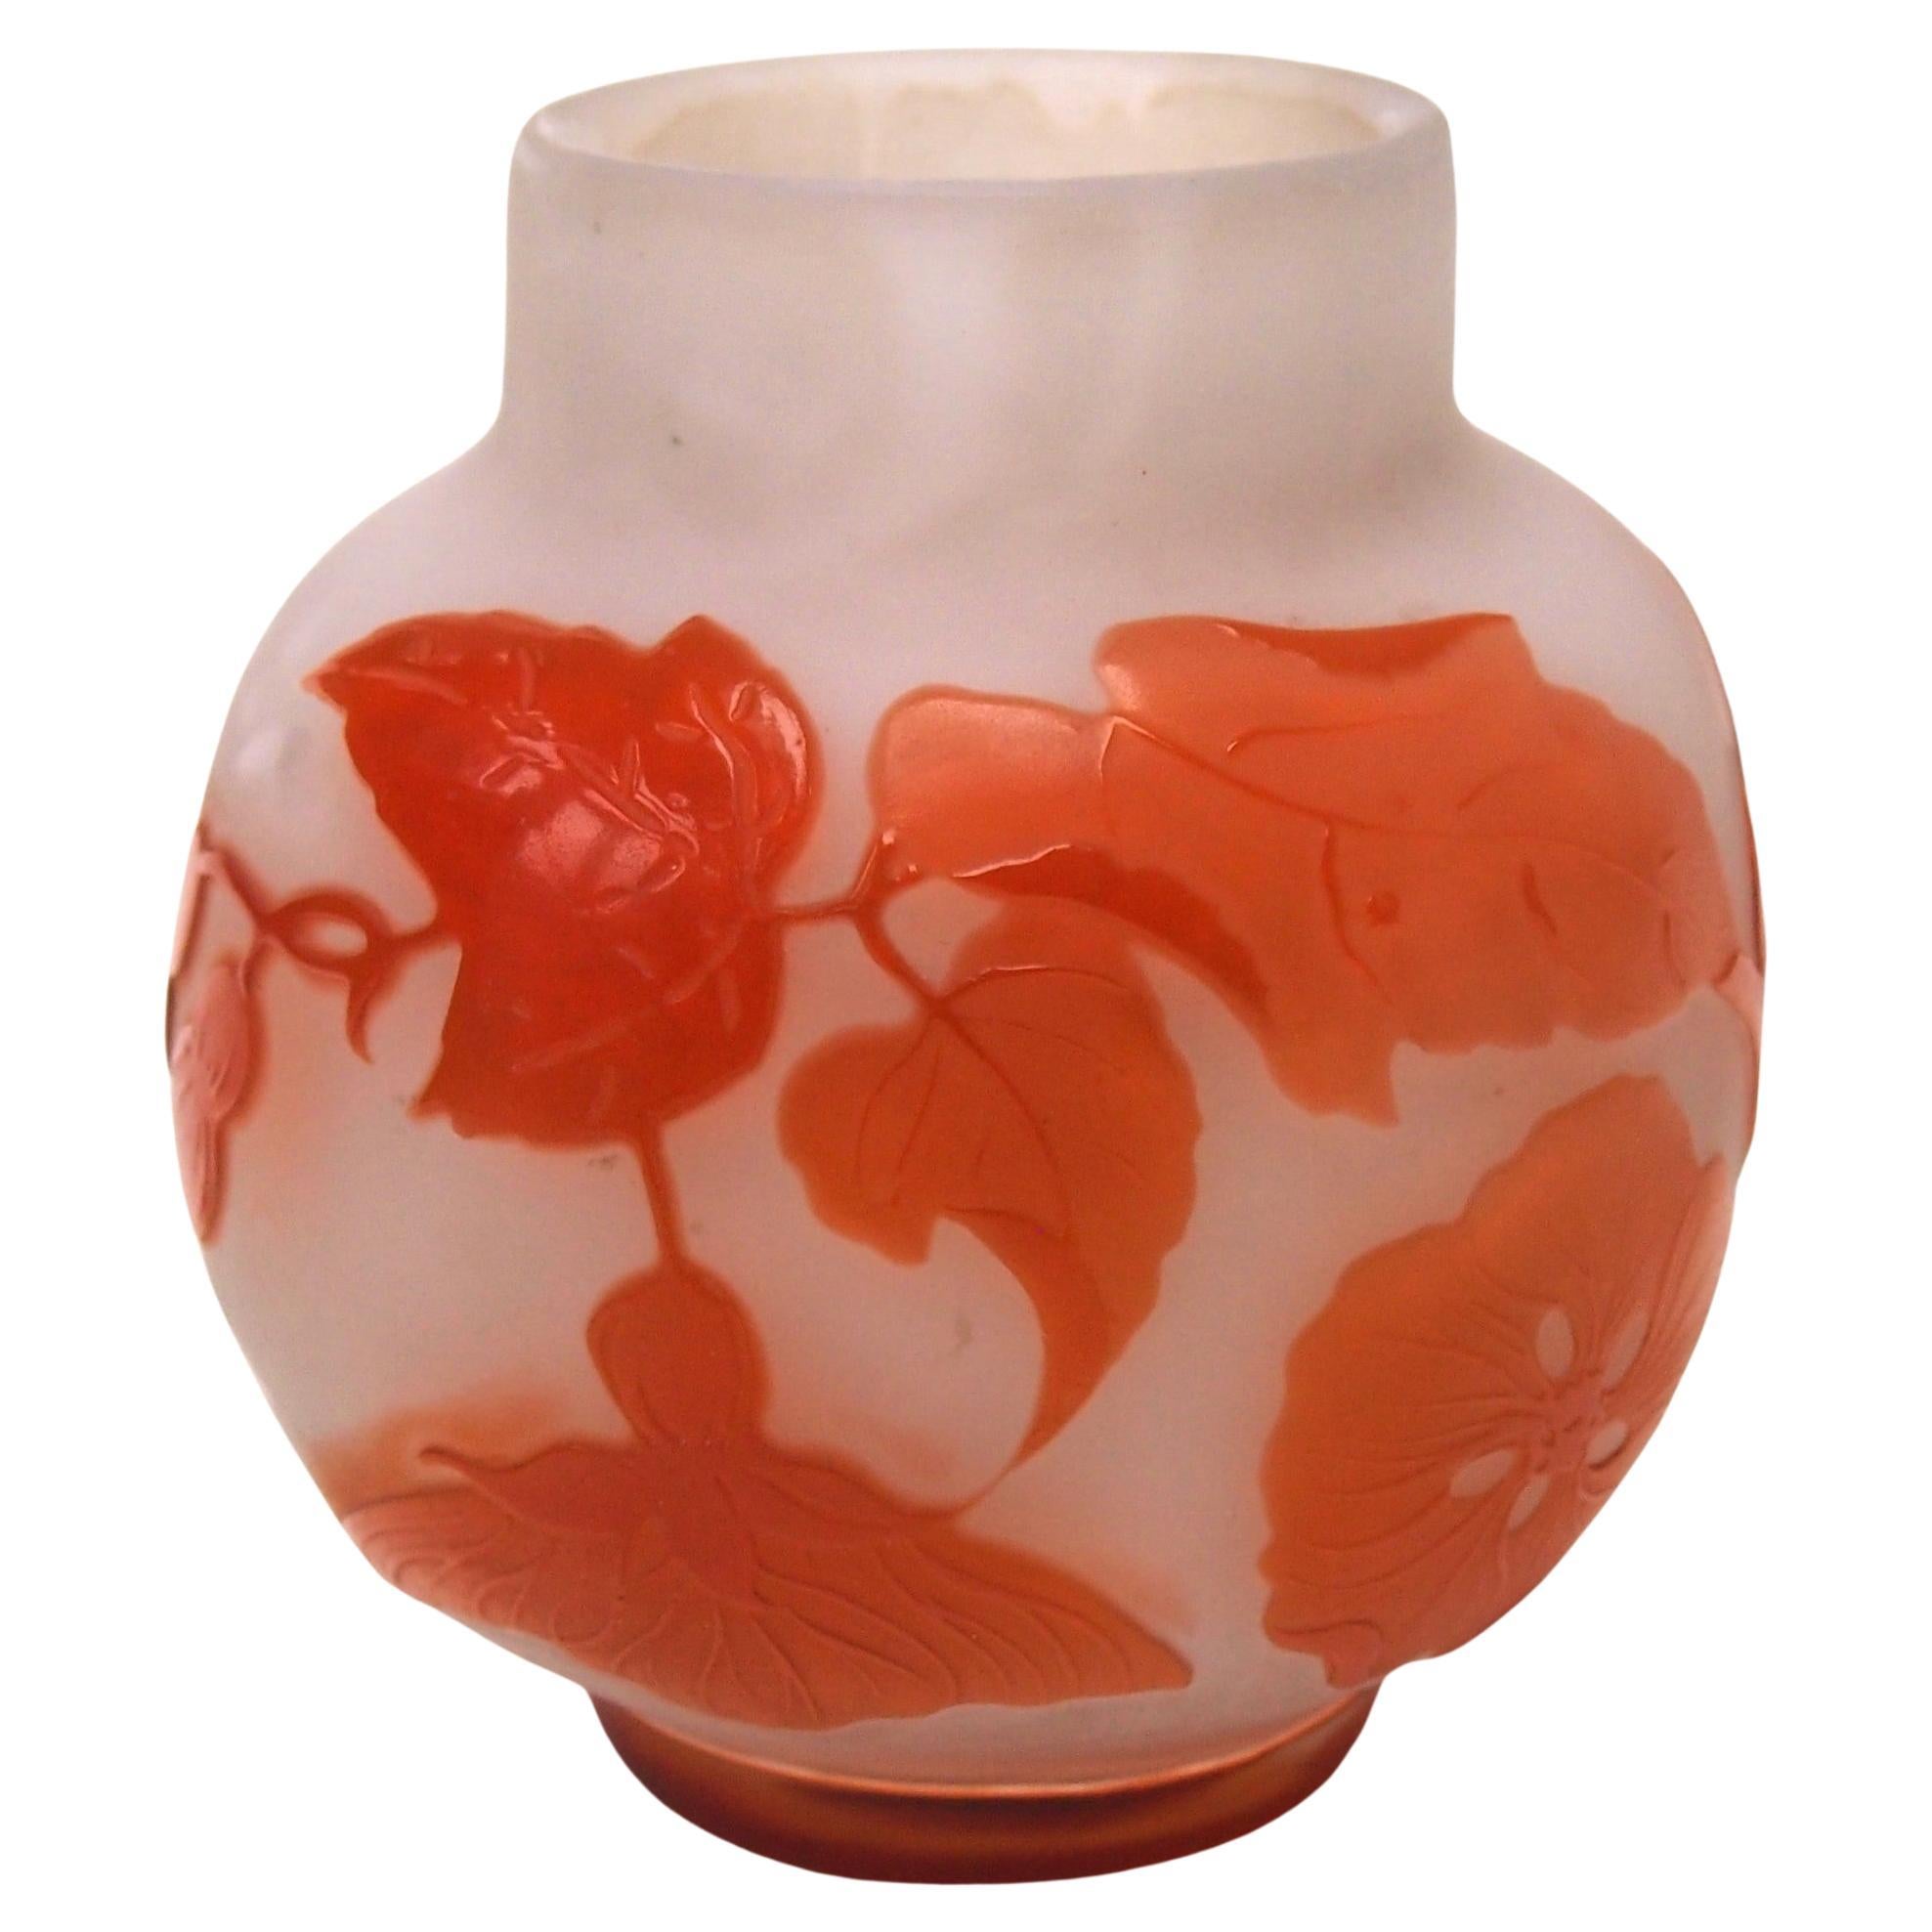 Remarquable vase en verre camé botanique Emile Galle, Art nouveau français du début - vers 1900